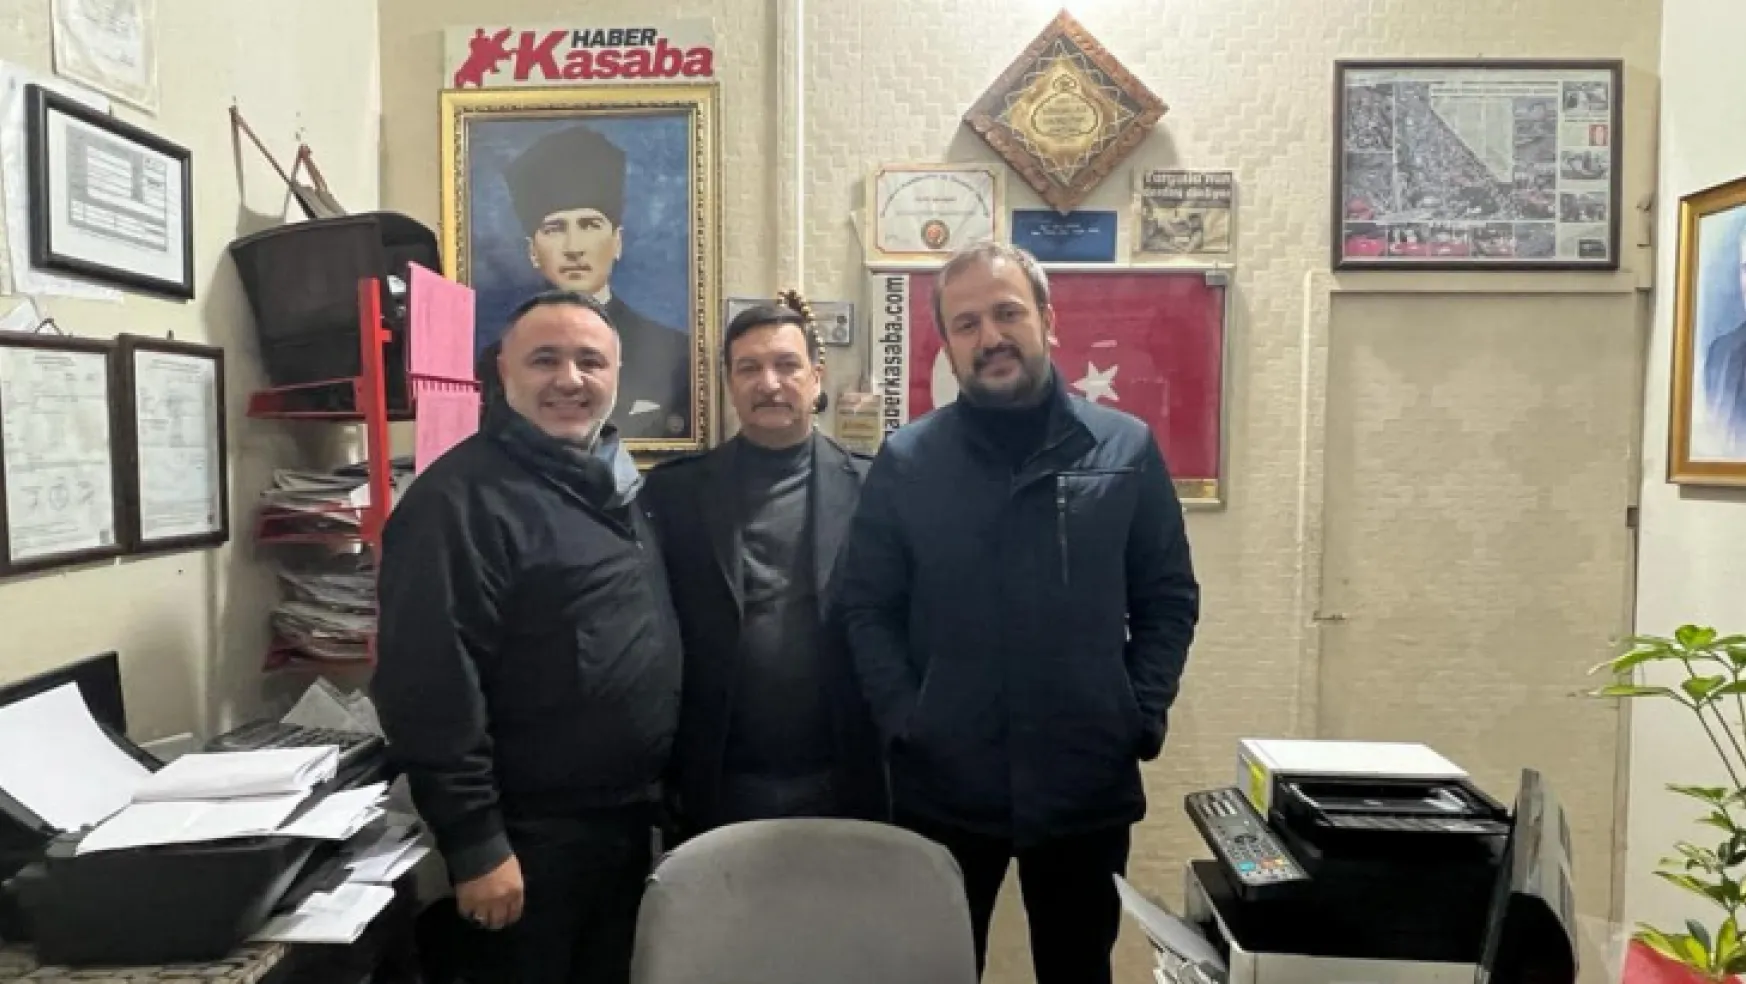 MHP ve AK Parti'li başkanlardan Haber Kasaba Gazetesi'ne ziyaret